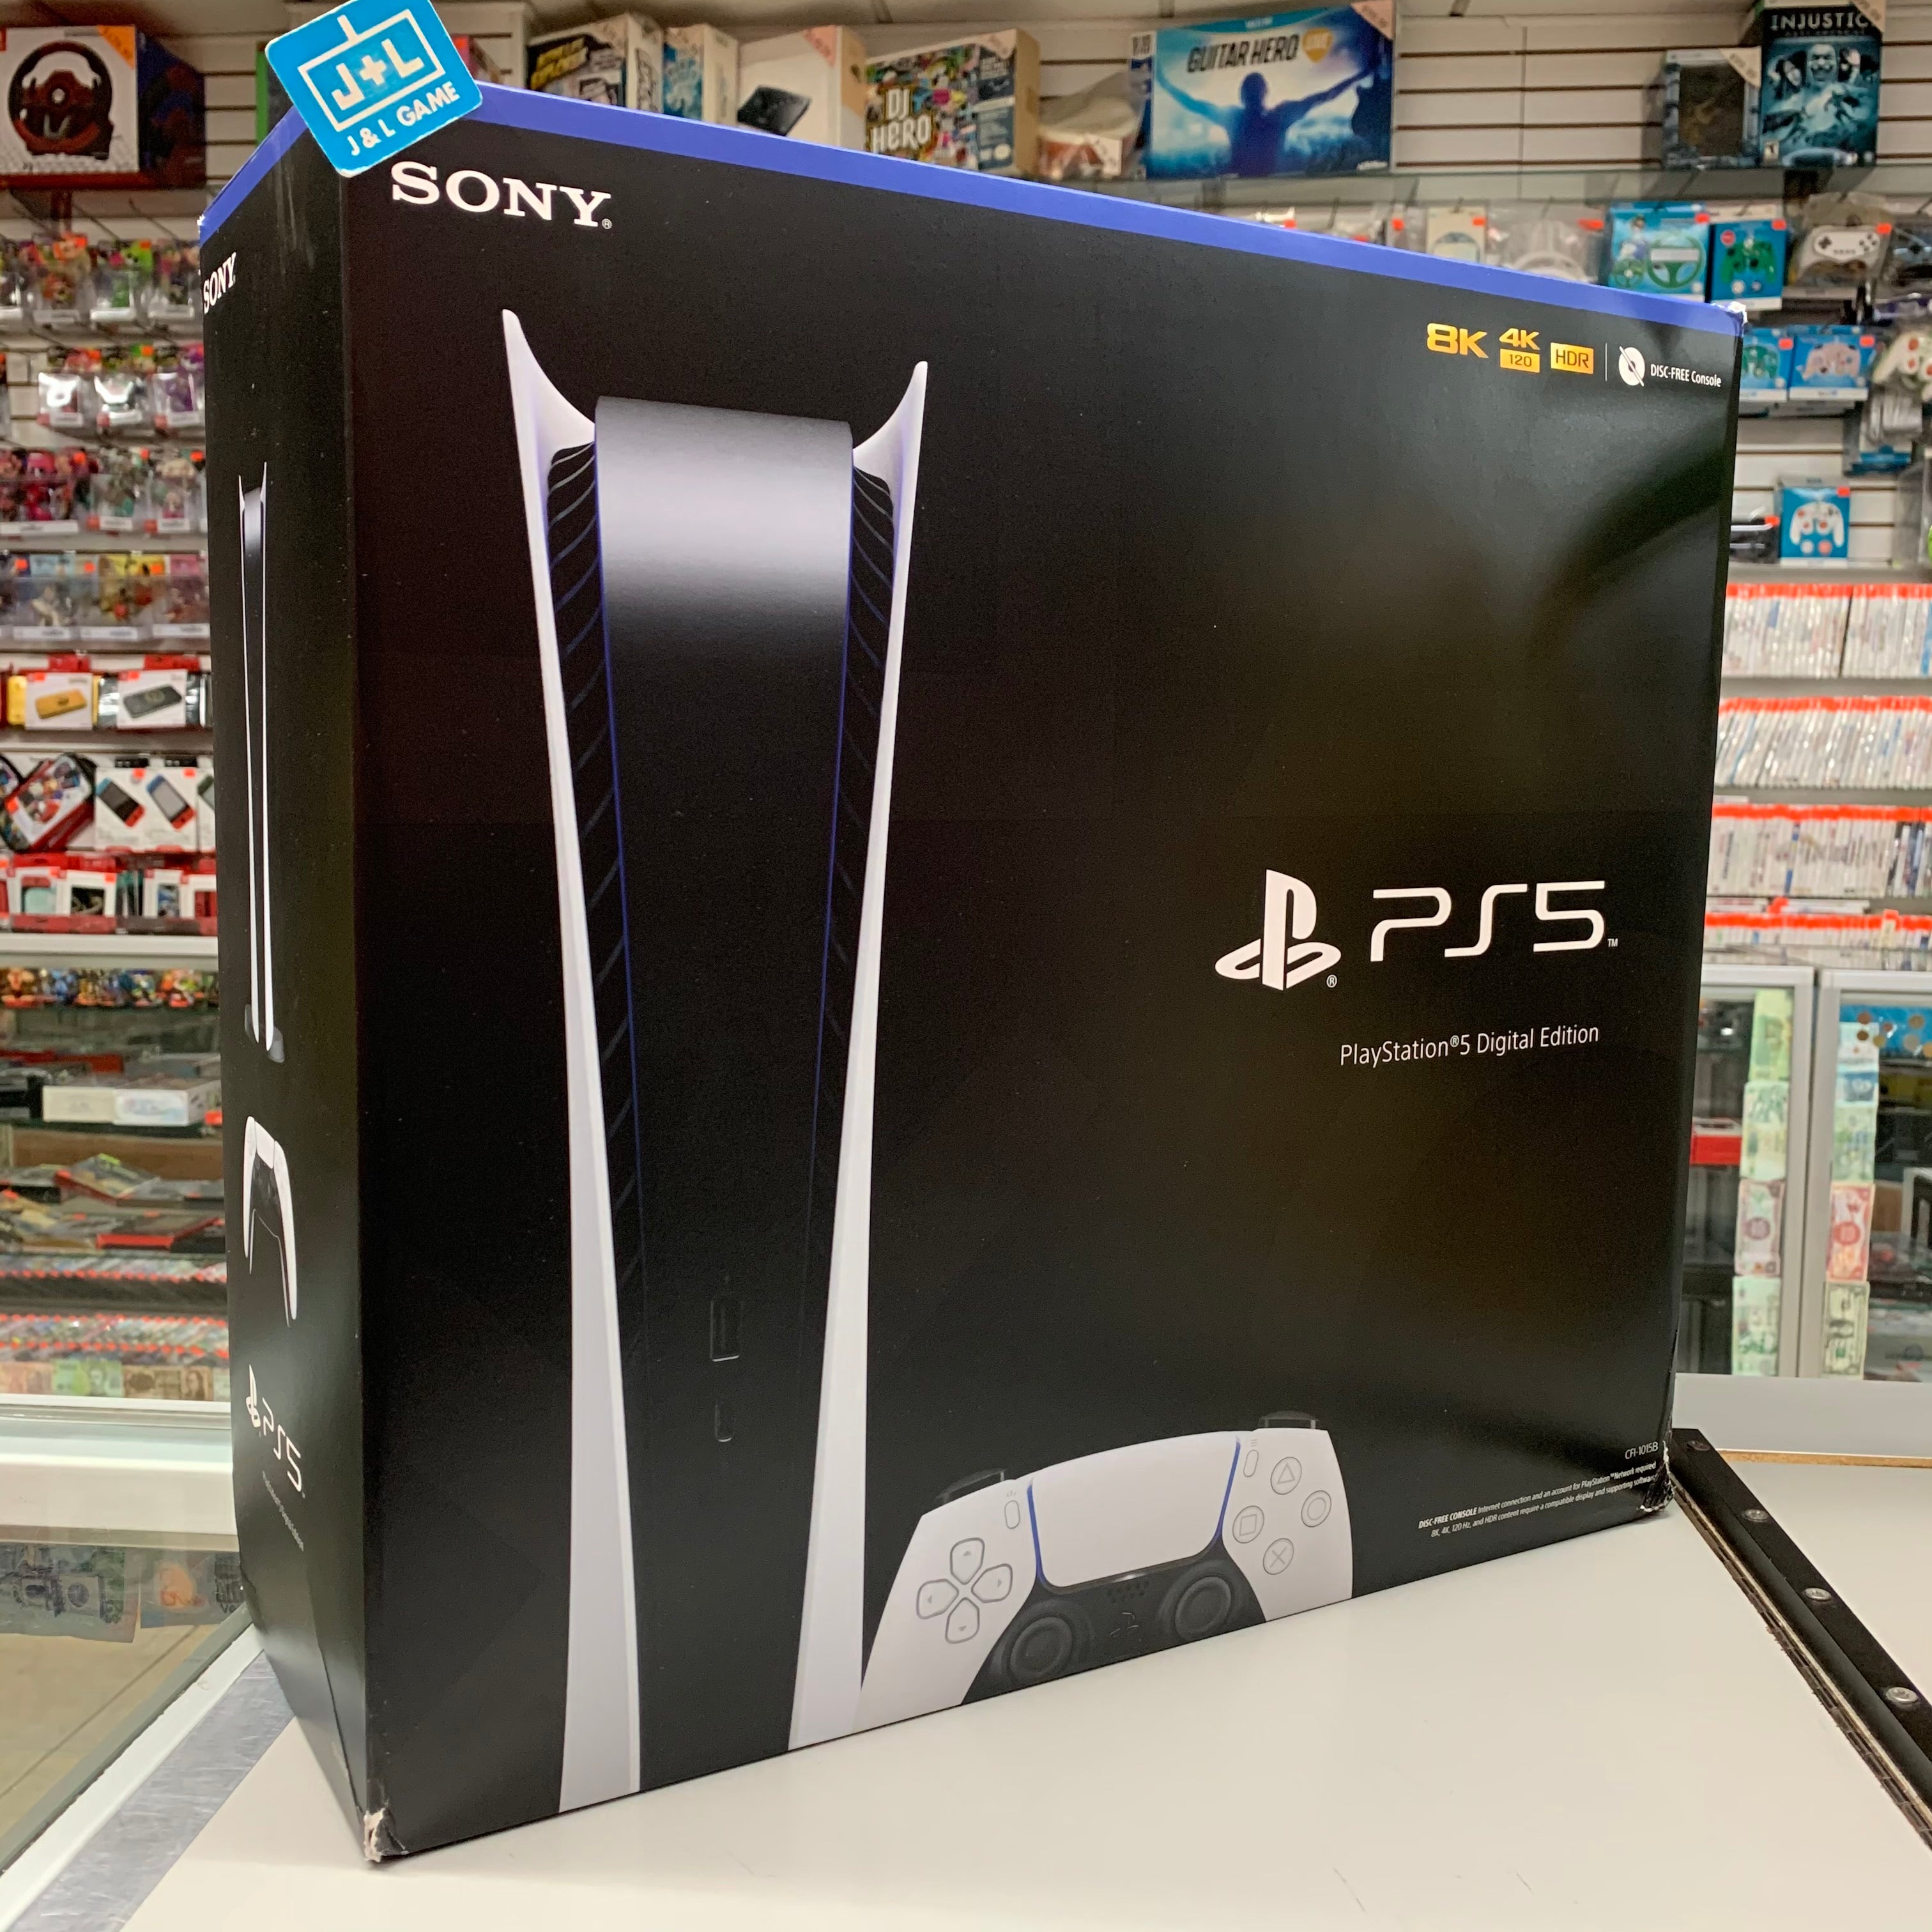  Sony PS5 PlayStation 5 Edición digital consola de